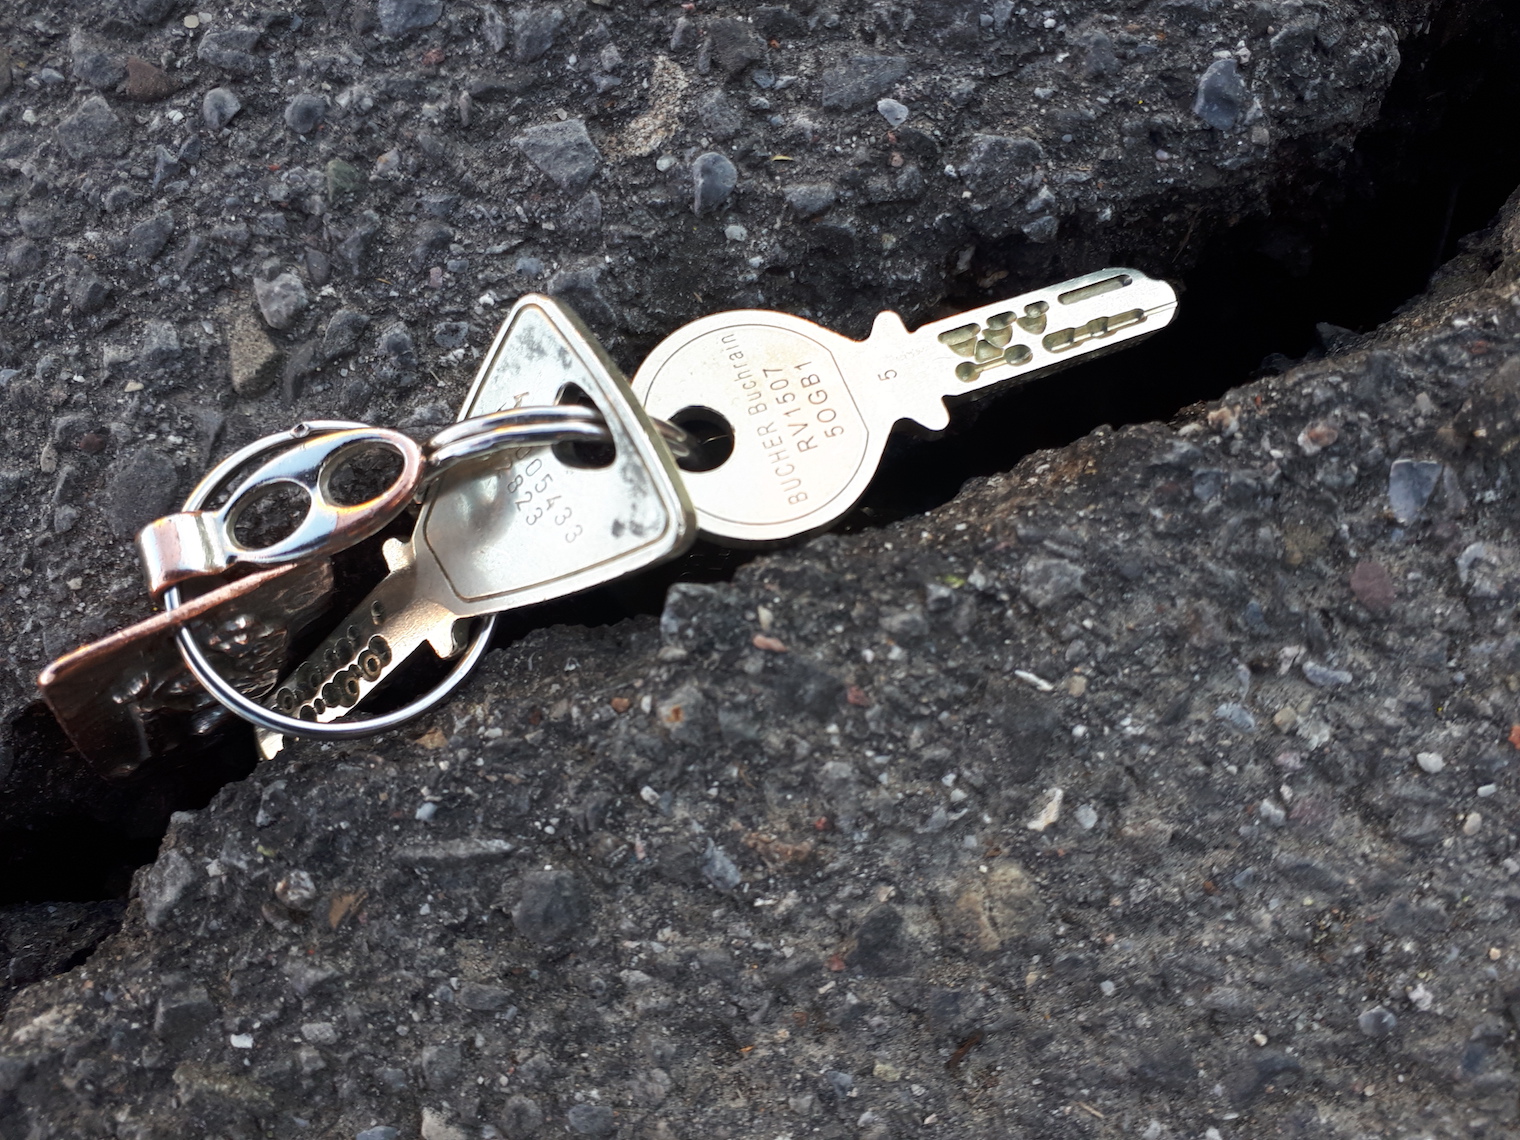 Auf der Alten Steinhauserstrasse verschwinden bald die Schlüssel im Asphalt.